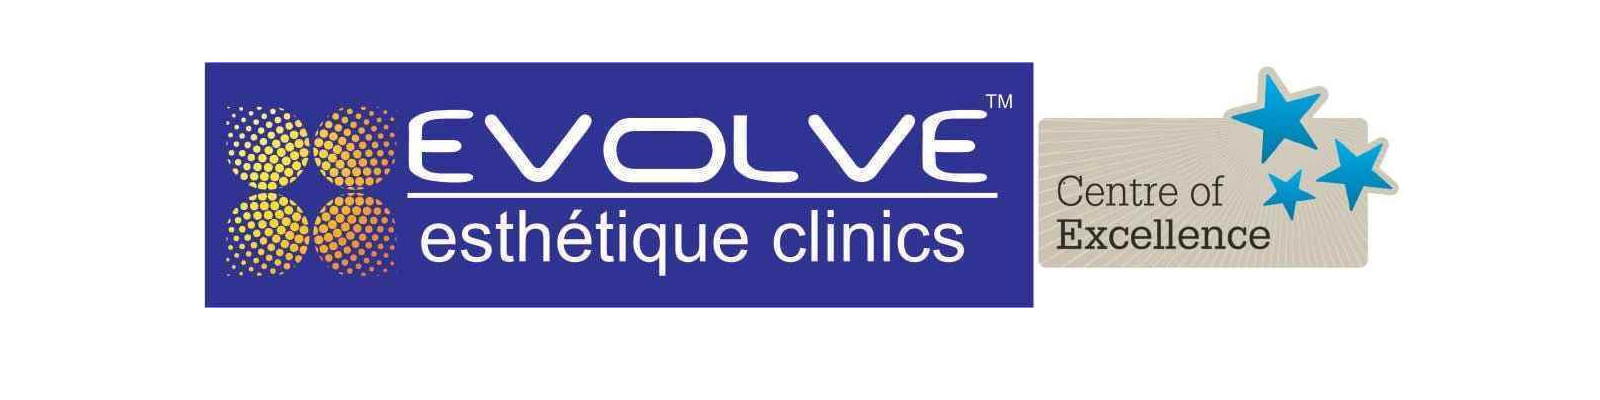 Evolve Esthetique Clinics - Dehradun